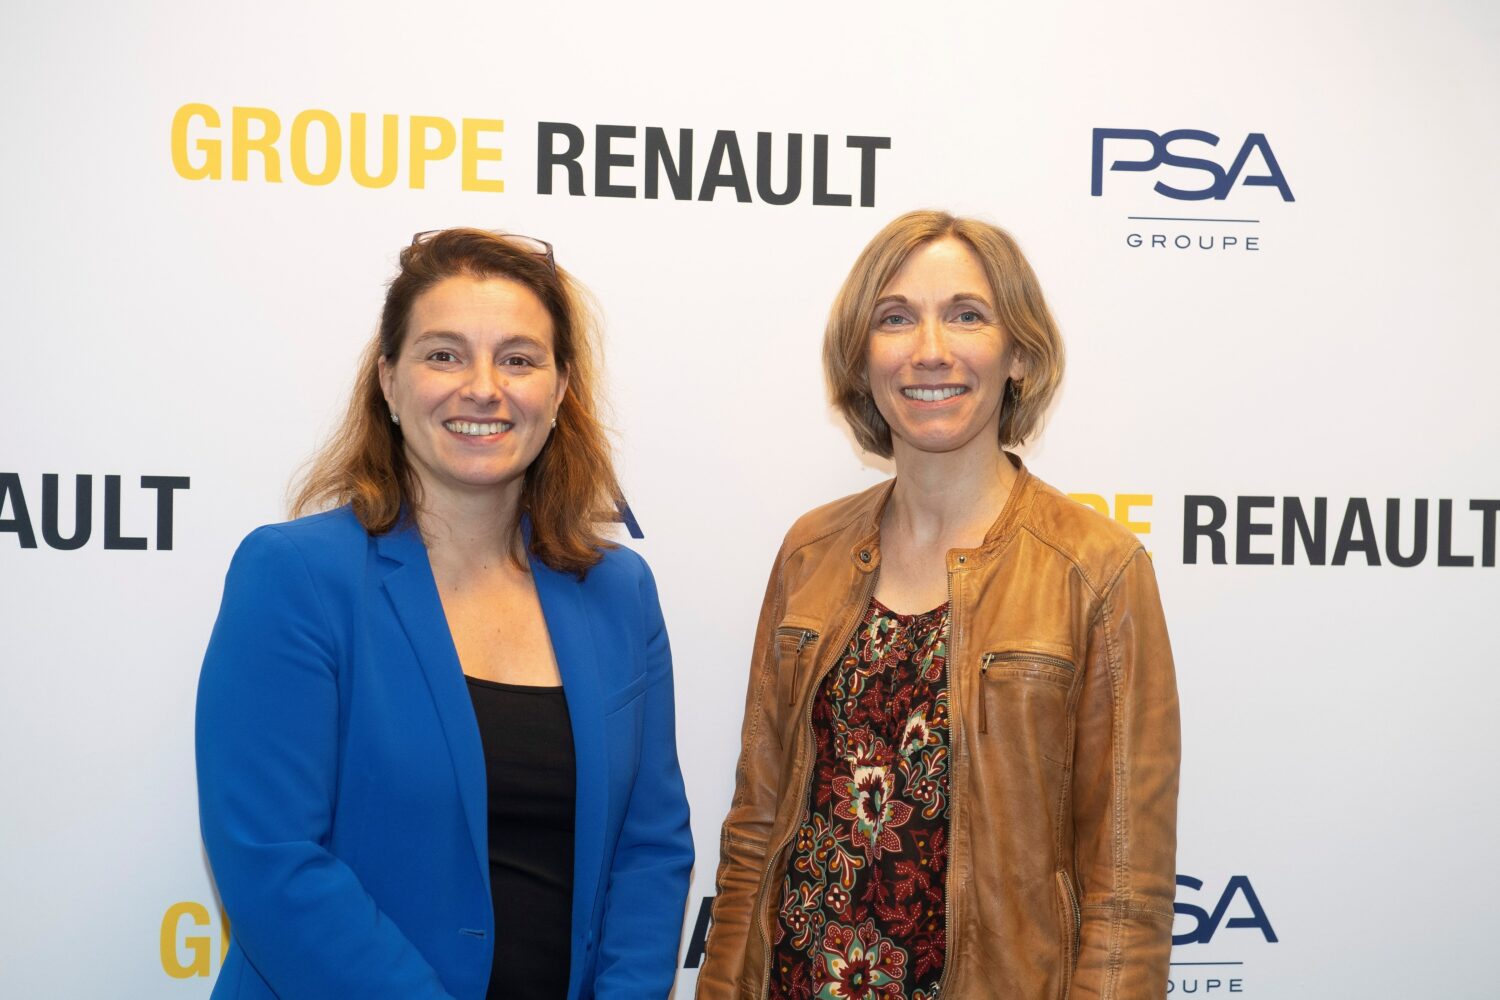 2019 - Le LAB : 50 ans de collaboration entre les Groupes PSA et RENAULT